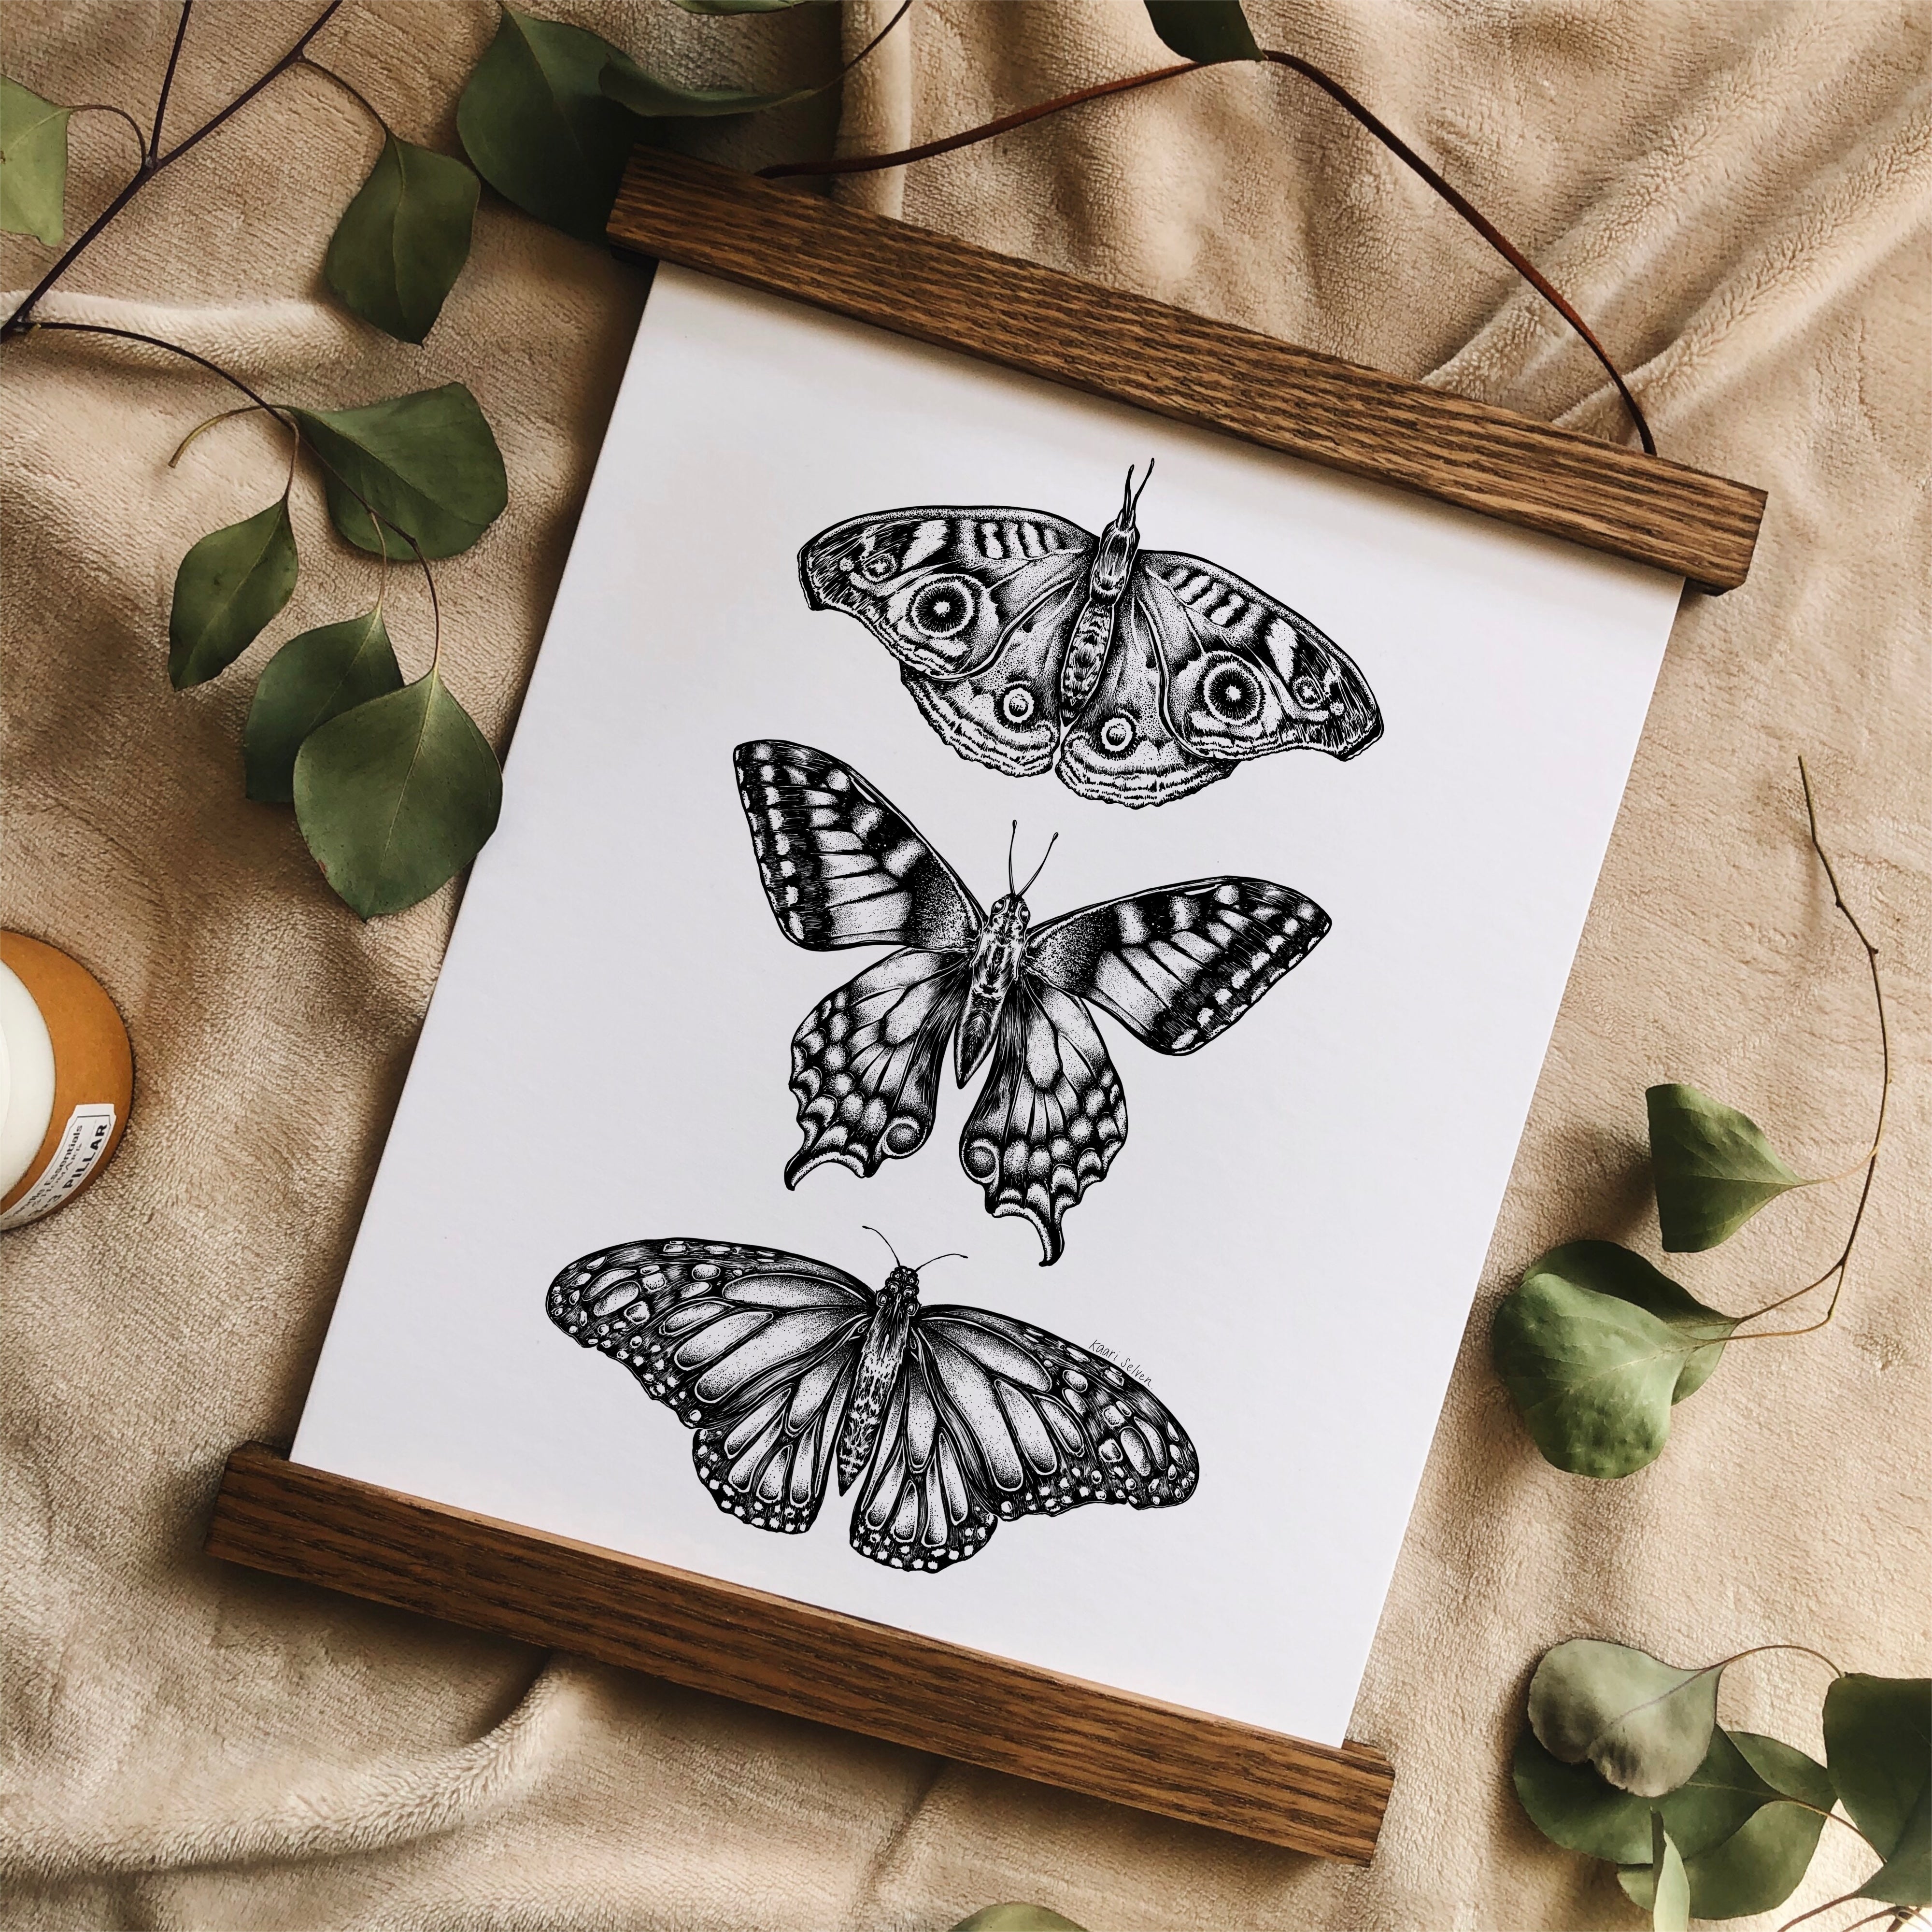 Three Butterflies Art Print